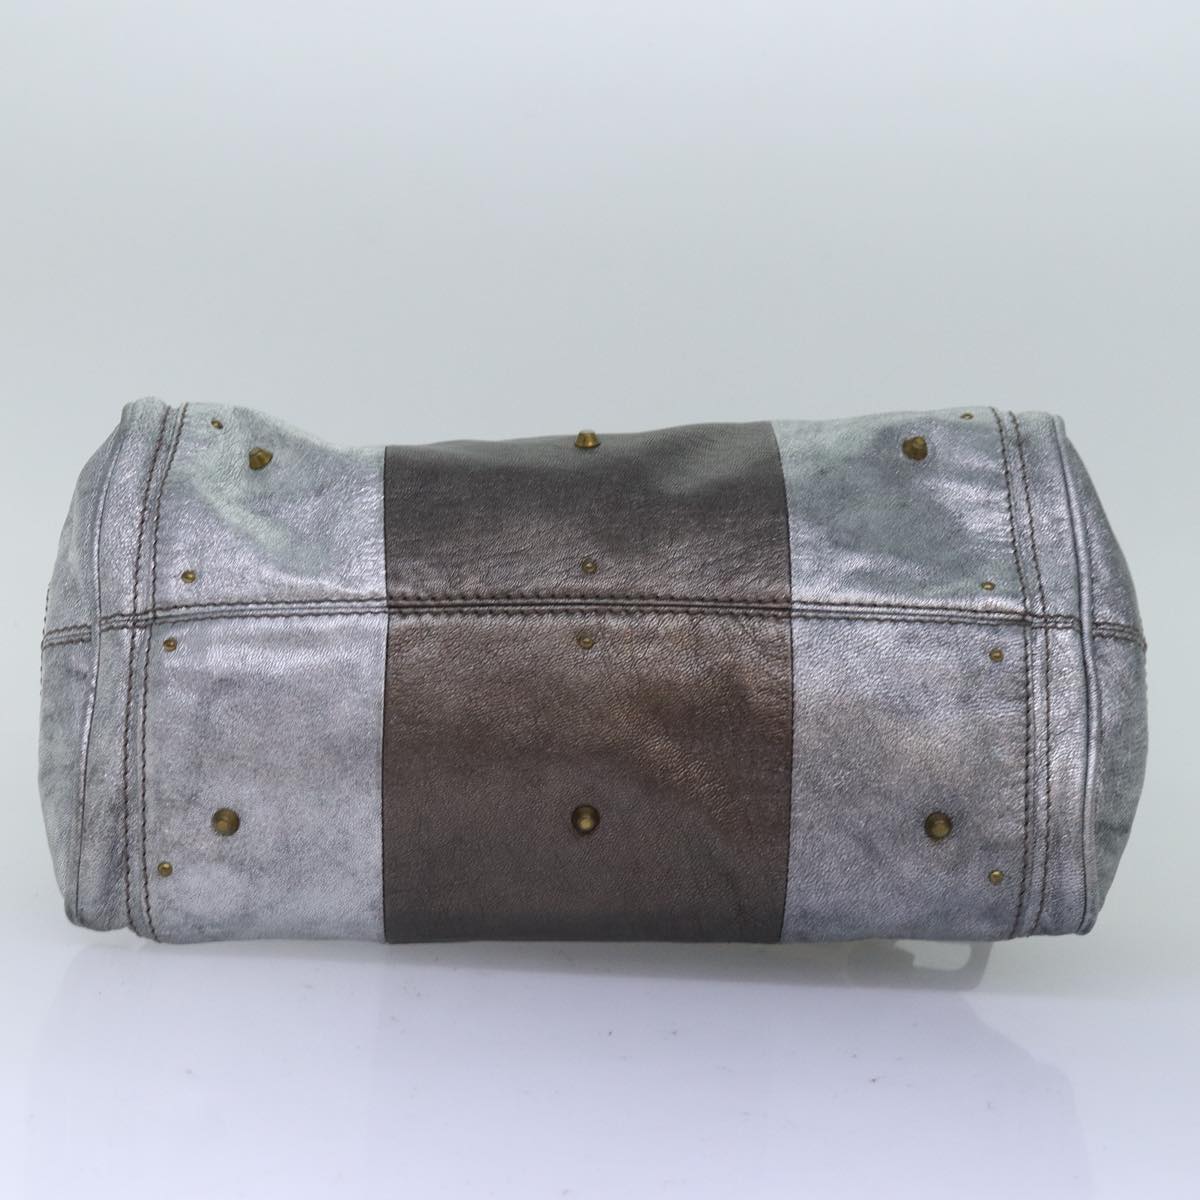 Chloe Paddington Hand Bag Leather Silver Auth yk12617